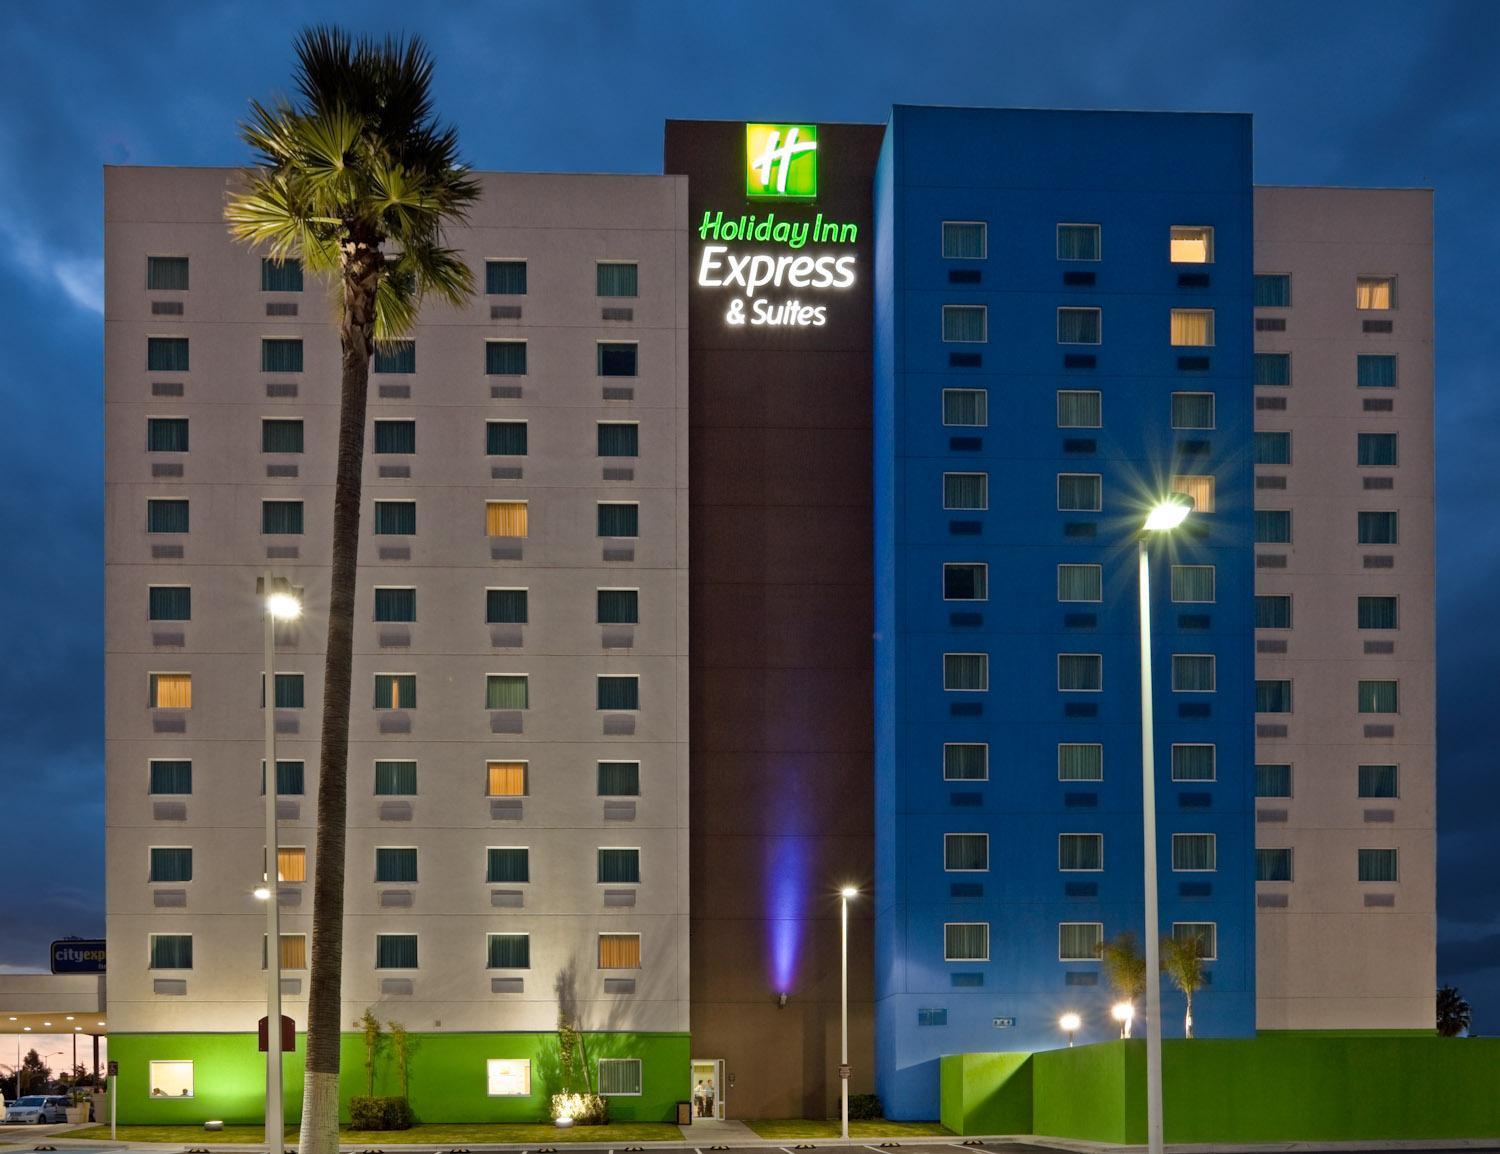 Vista da fachada Holiday Inn Express Toluca Zona Aeropuerto